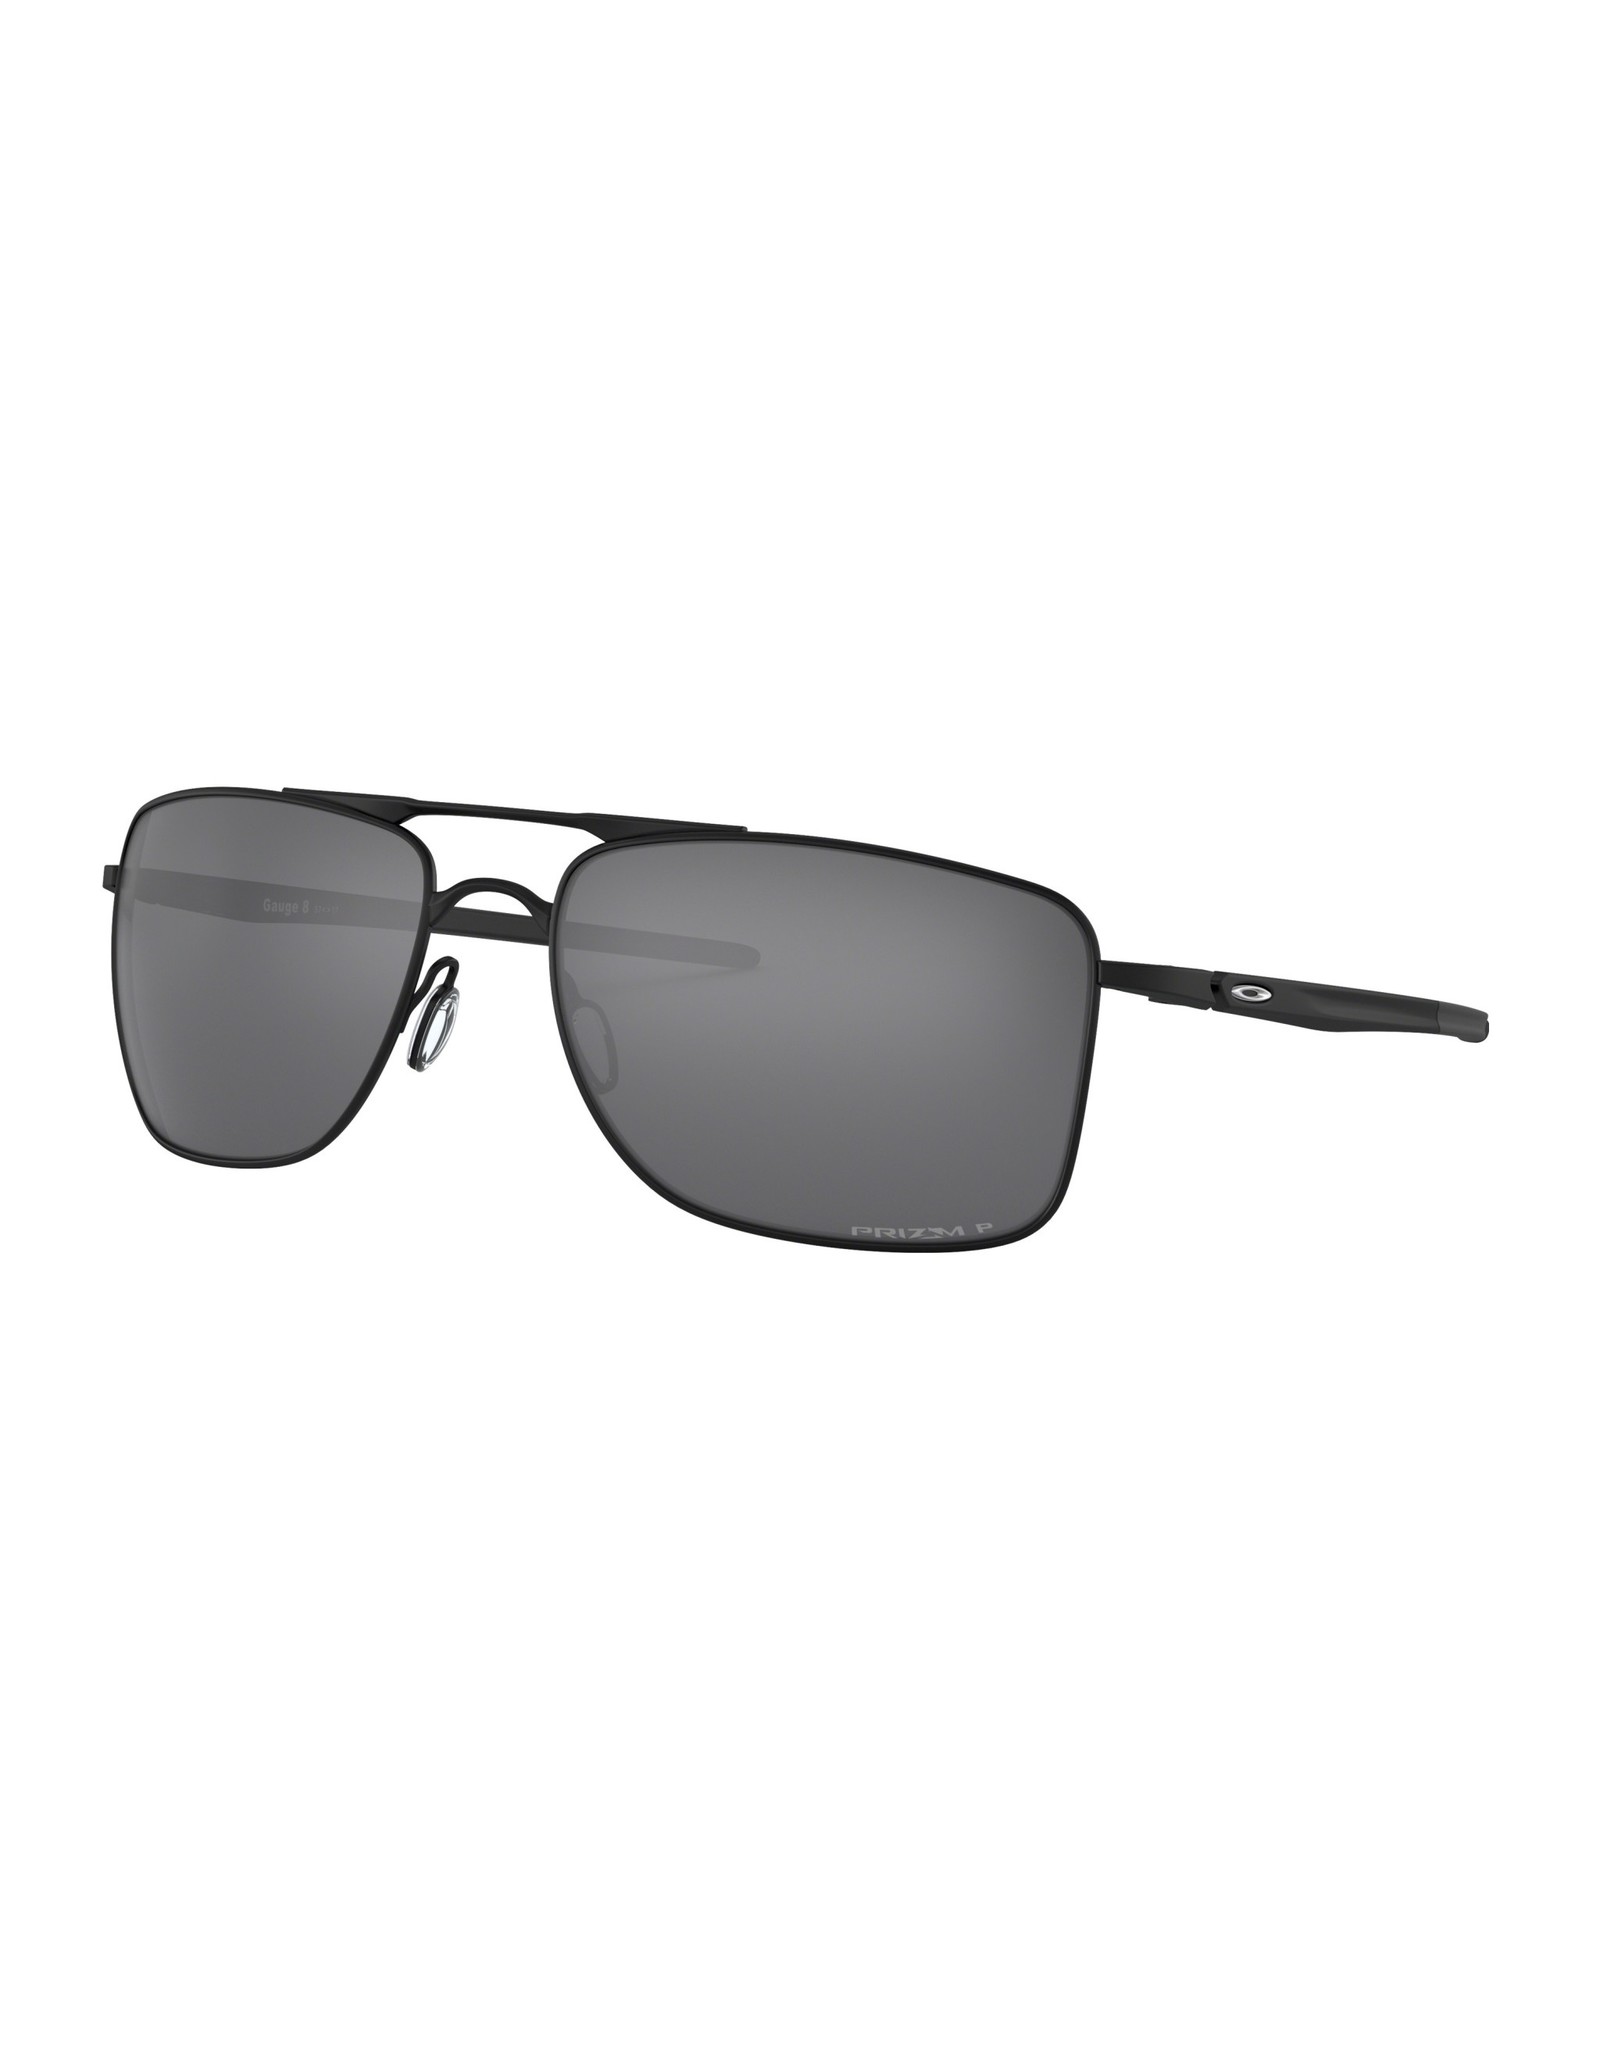 Oakley Gauge 8 Matte Black Sunglasses 